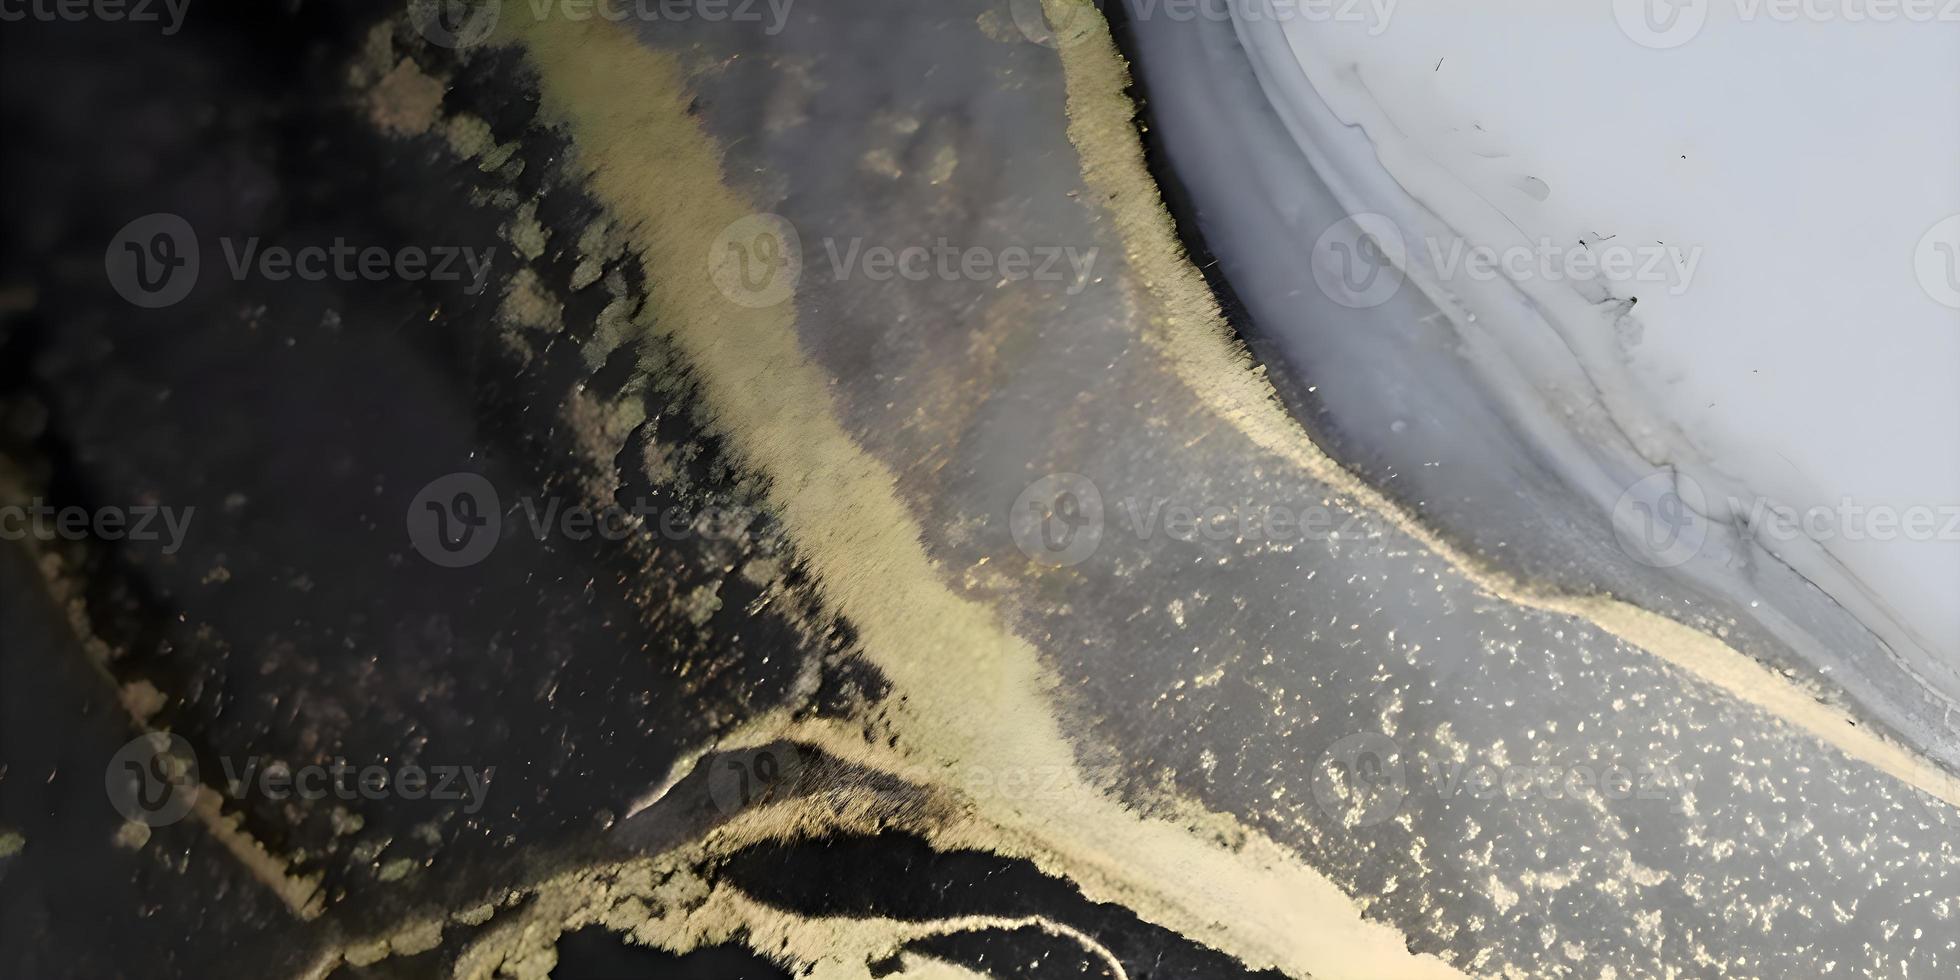 abstrakter beiger oder cremefarbener marmorbeschaffenheitshintergrund. detaillierte natürliche Marmoroberfläche. foto